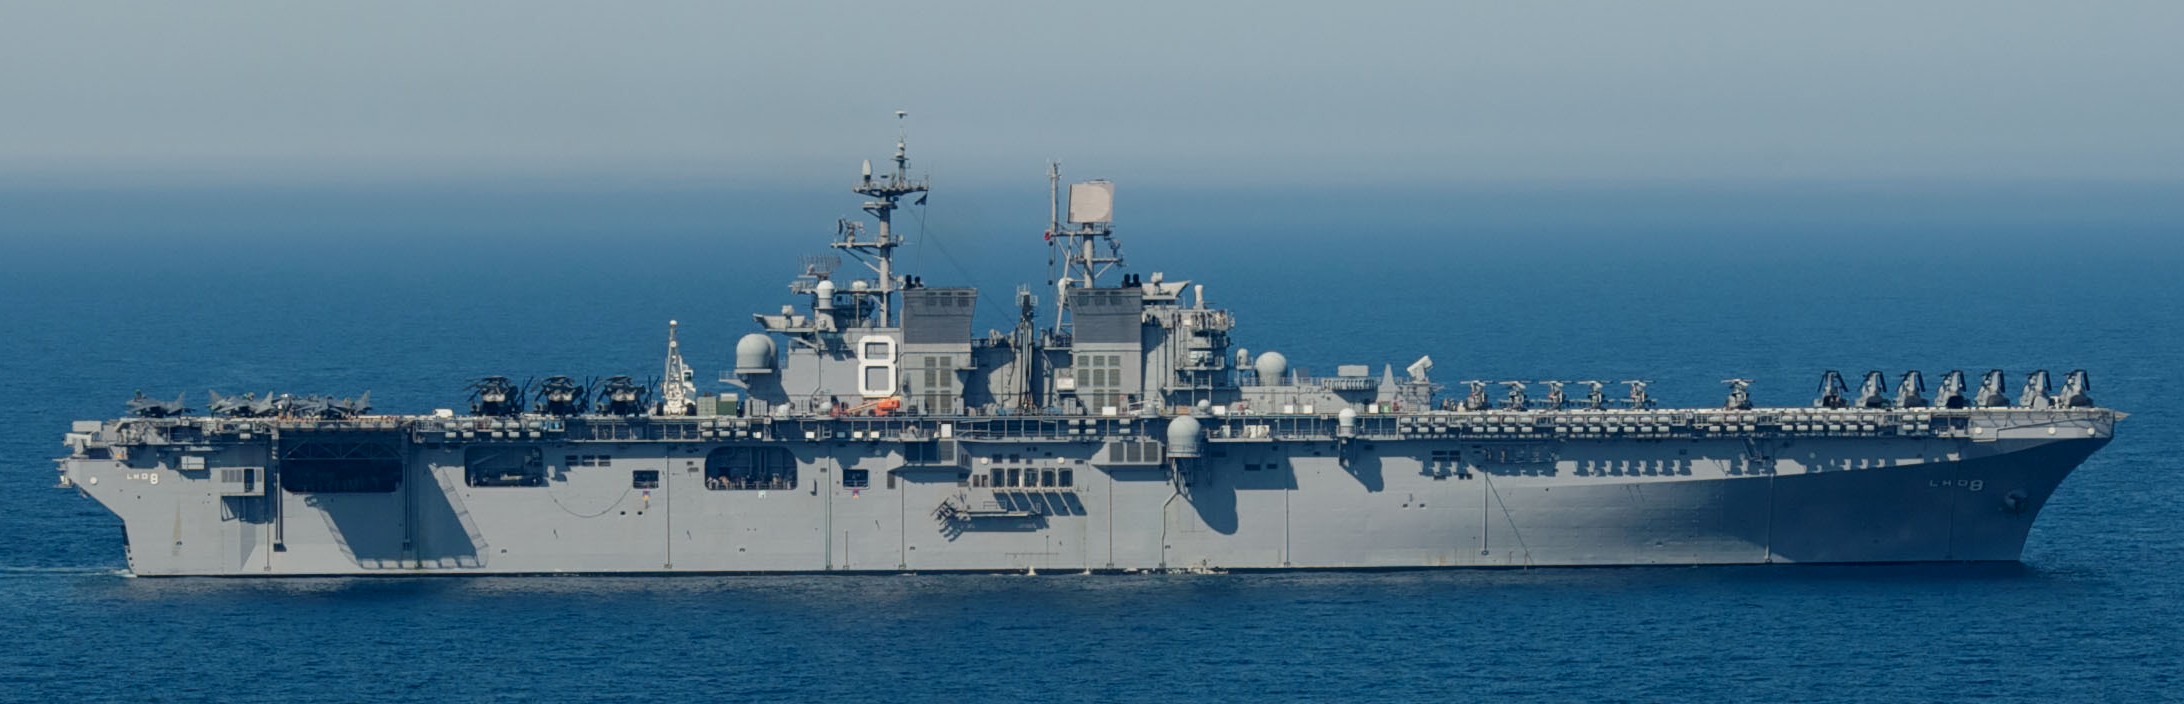 lhd-8 uss makin island amphibious assault ship landing helicopter dock us navy hmm-268 marines 40